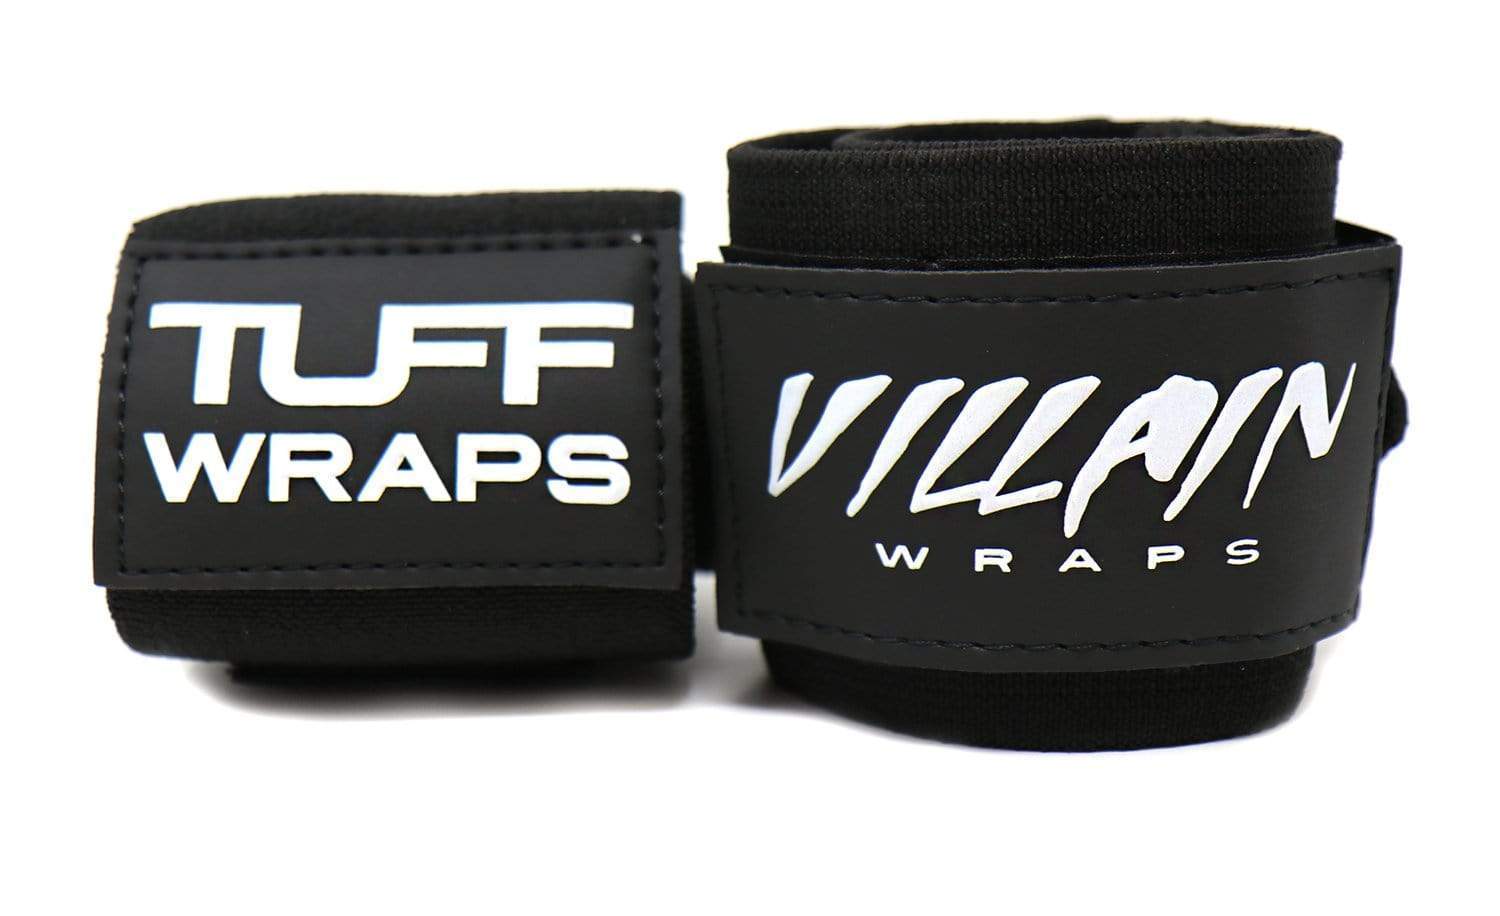 All Black Villain "STIFF" Wrist Wraps 16" Wrist Wraps